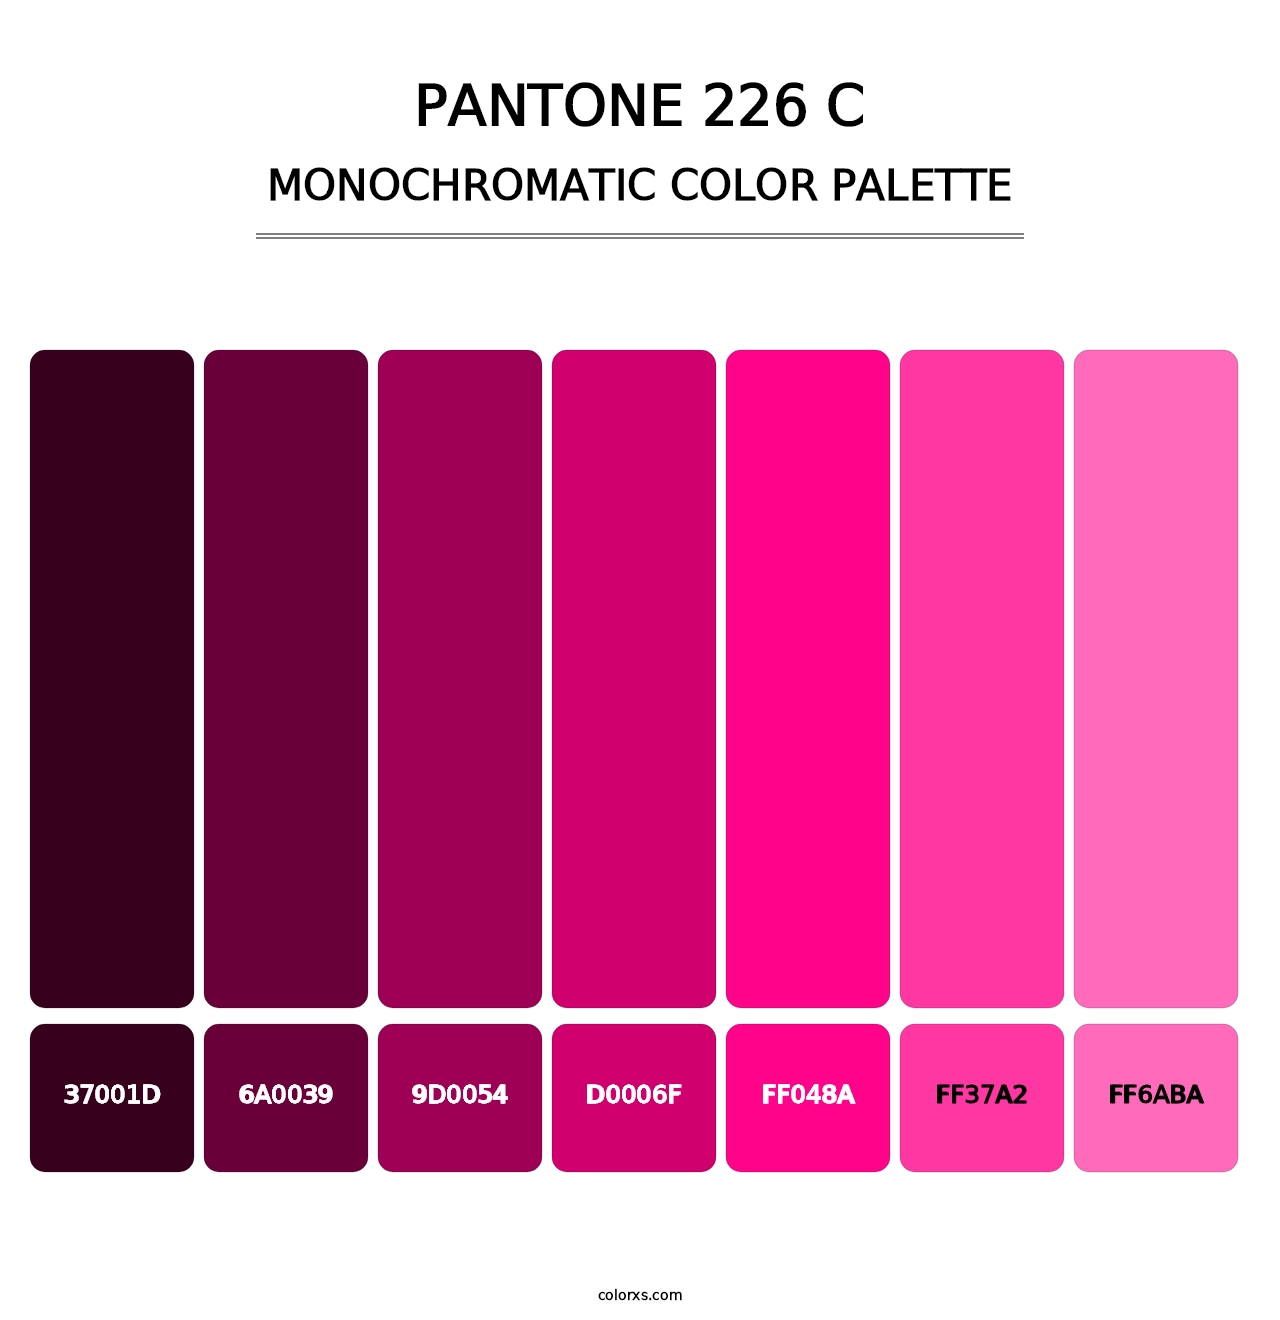 PANTONE 226 C - Monochromatic Color Palette